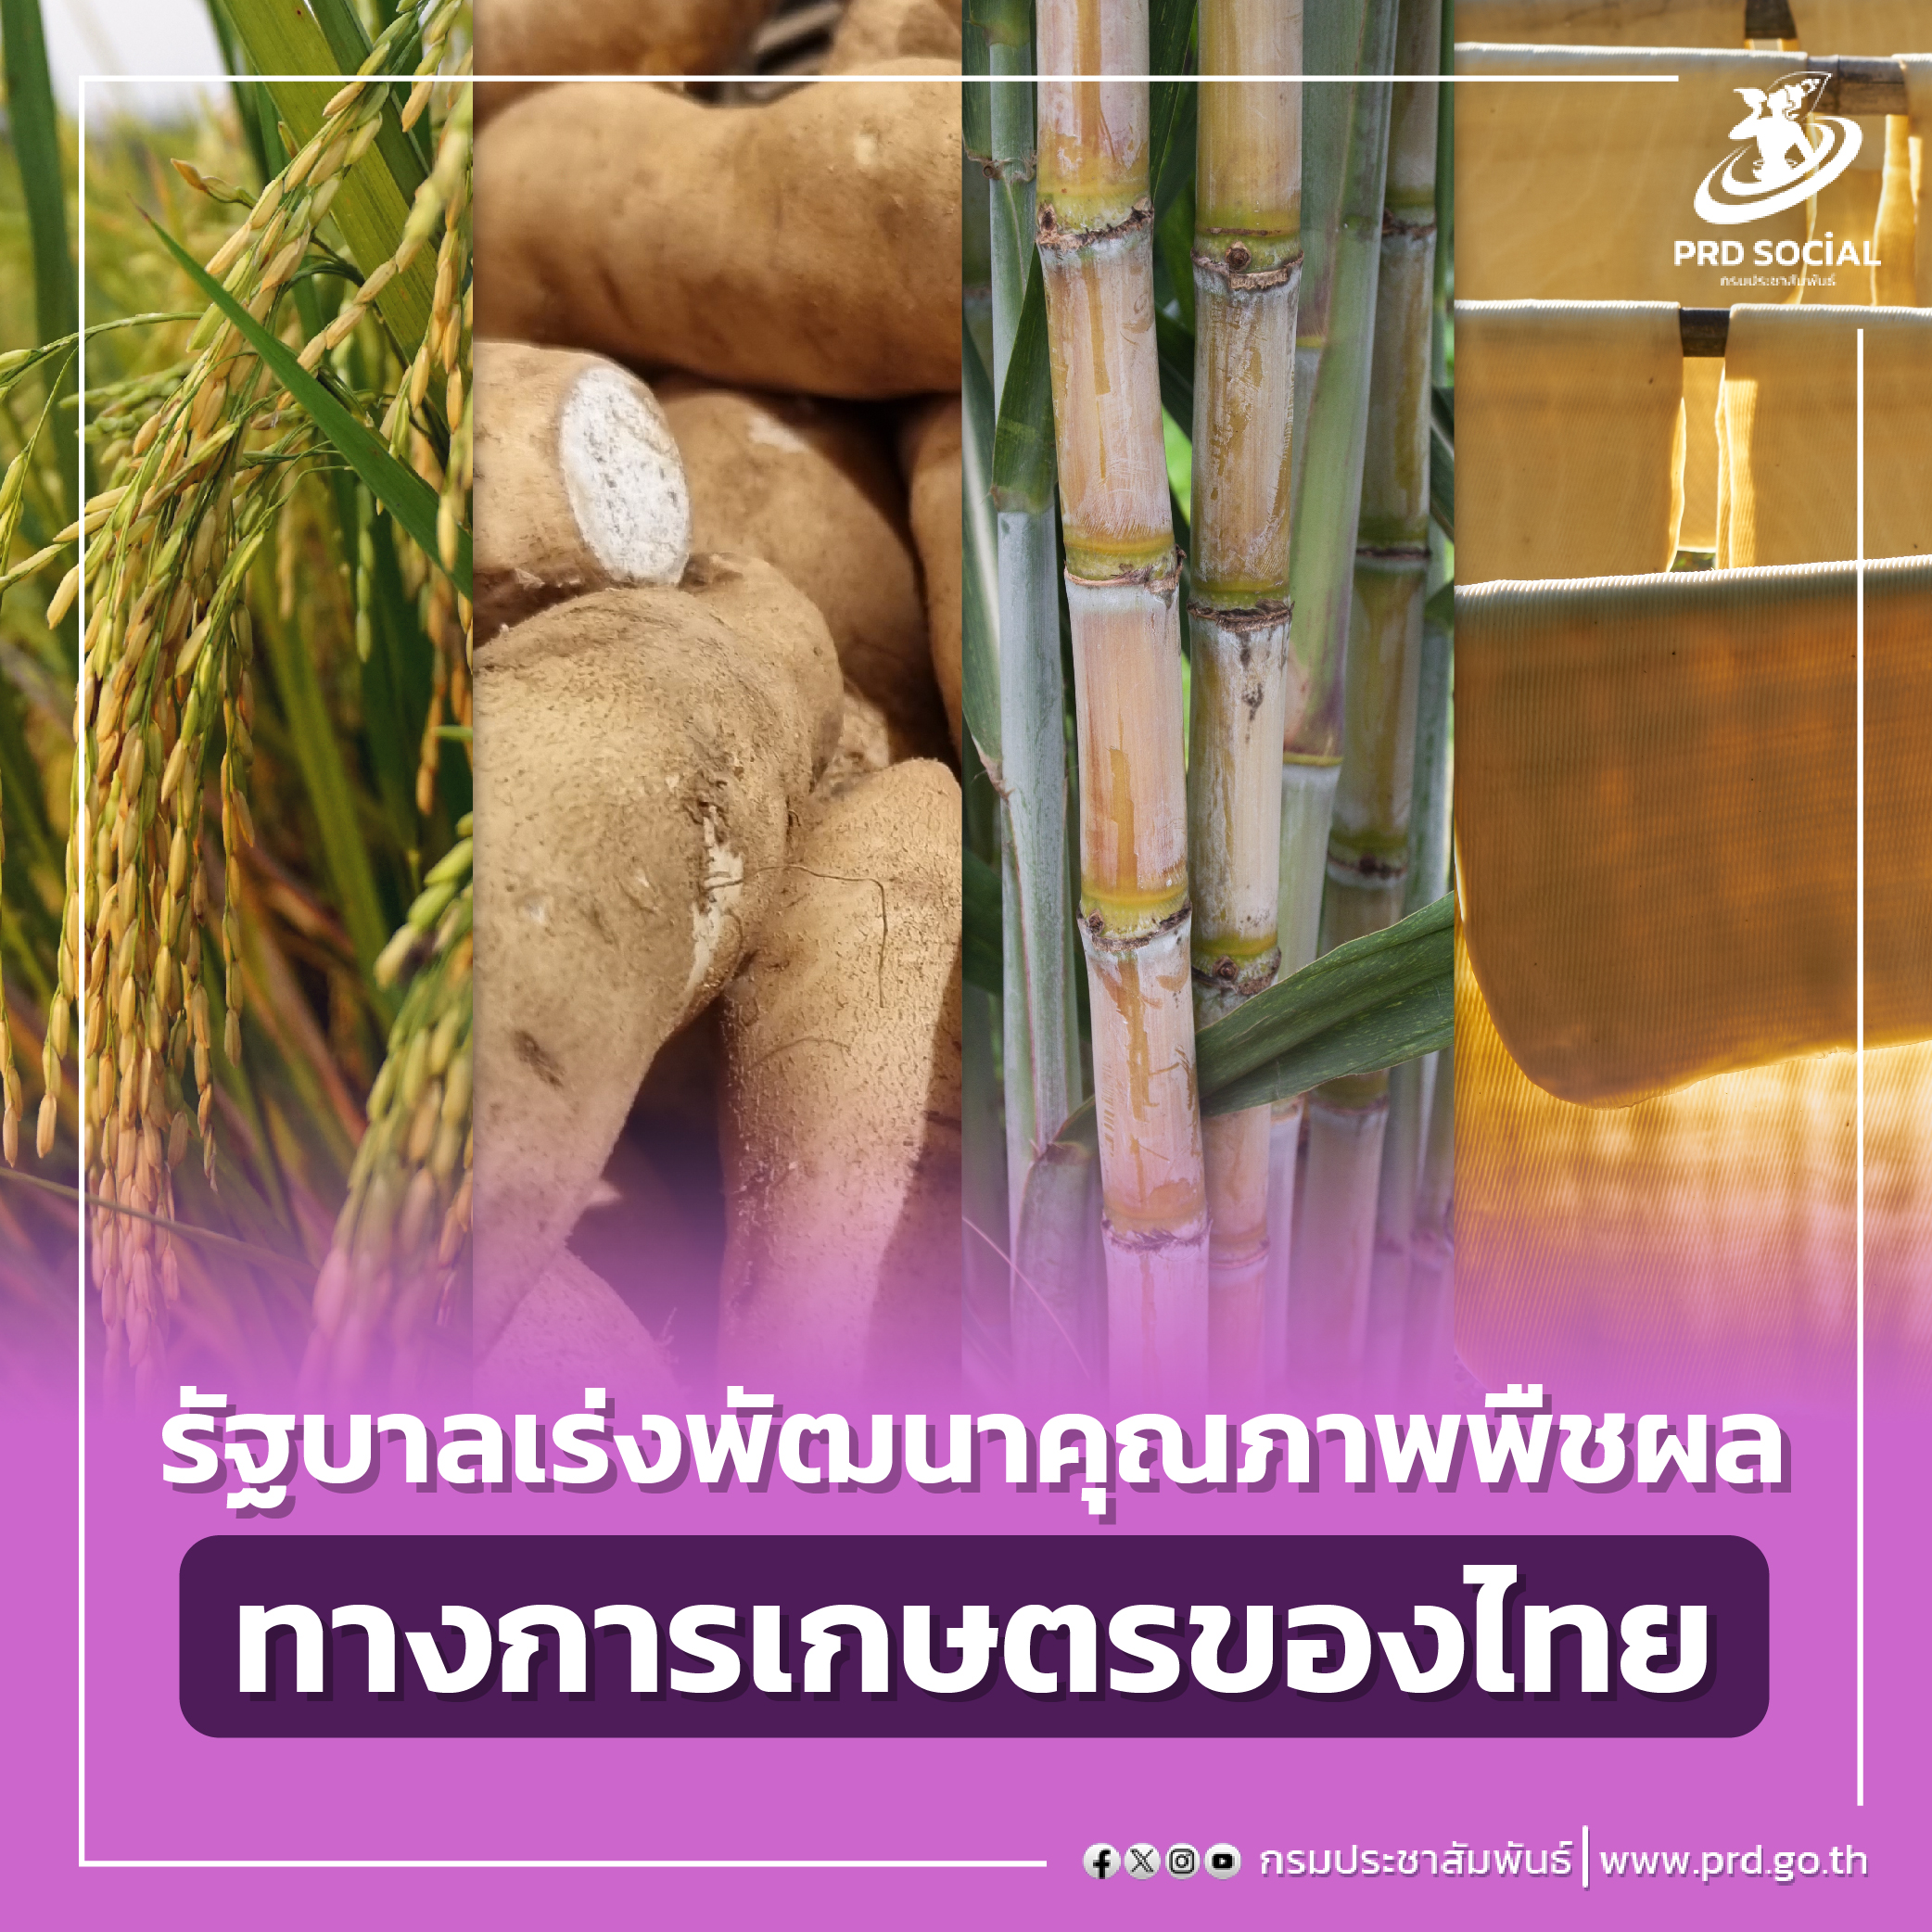 รัฐบาลเร่งพัฒนาคุณภาพพืชผลทางการเกษตรของไทย ย้ำยกระดับราคาสินค้าทางการเกษตร ทั้ง ข้าว มัน ยาง อ้อย ราคาดีขึ้นมาก